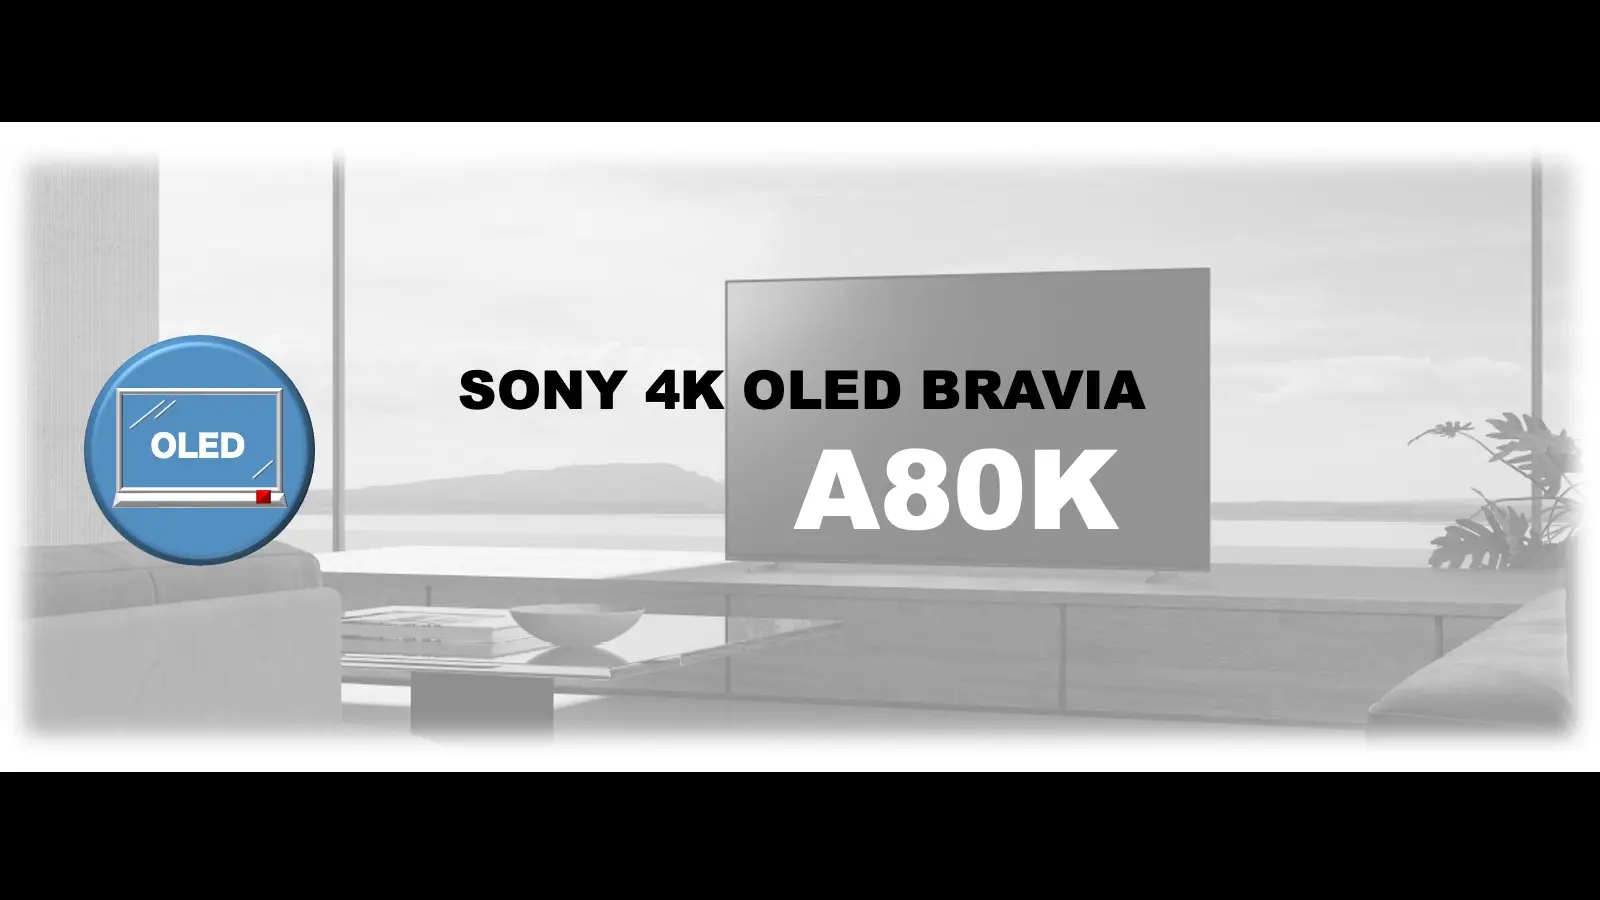 ソニー4K有機ELブラビア A80Kレビュー記事用のオリジナルアイキャッチ画像